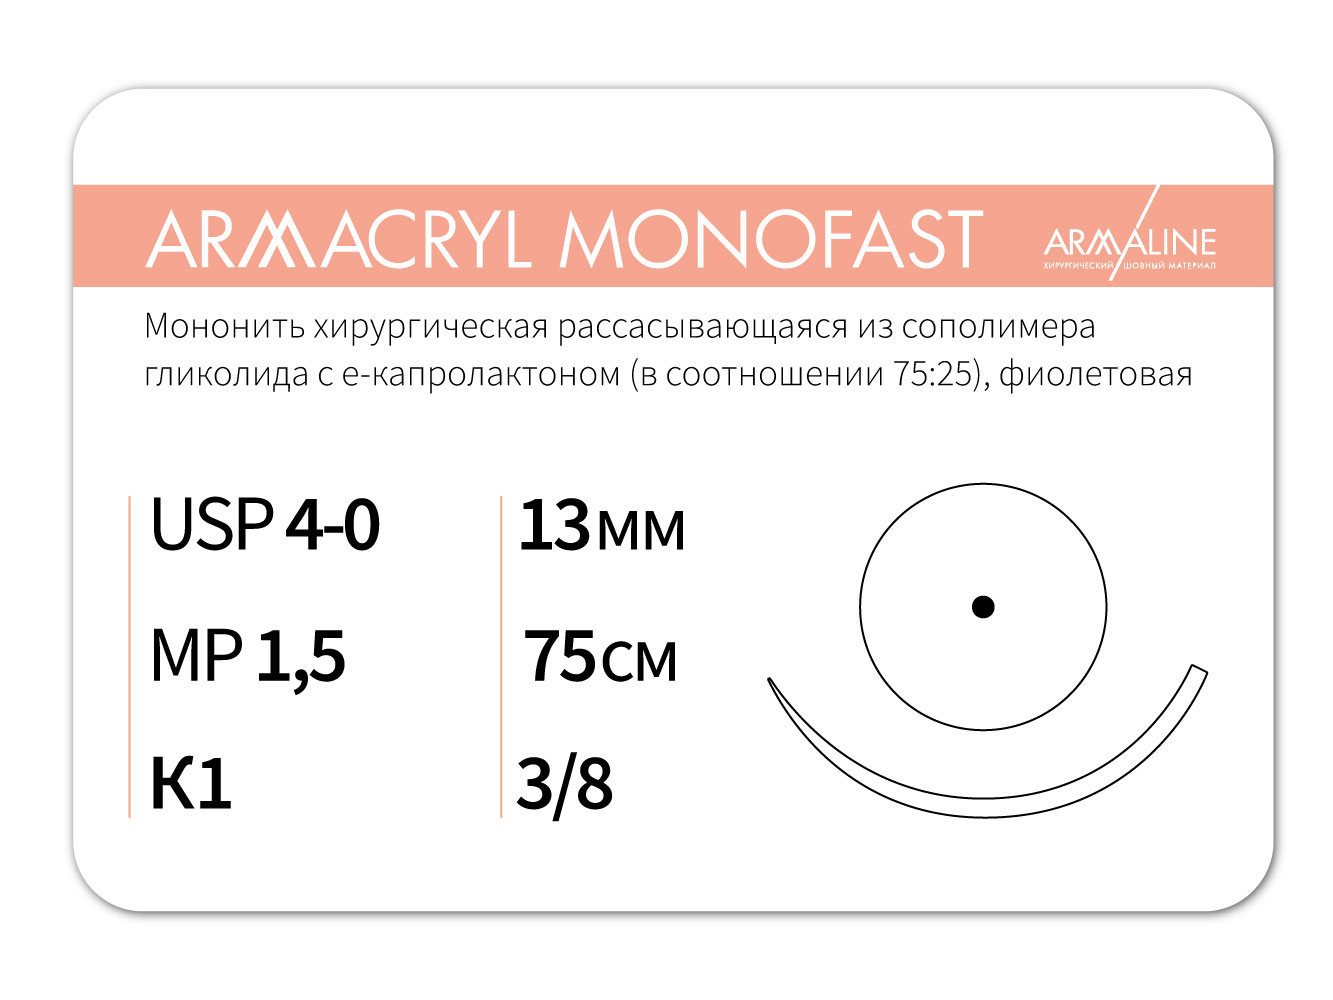 ARMACRYL MONOFAST/Армакрил монофаст (4-0) 75 см - материал хирургический шовный стерильный с атравматической колющей иглой